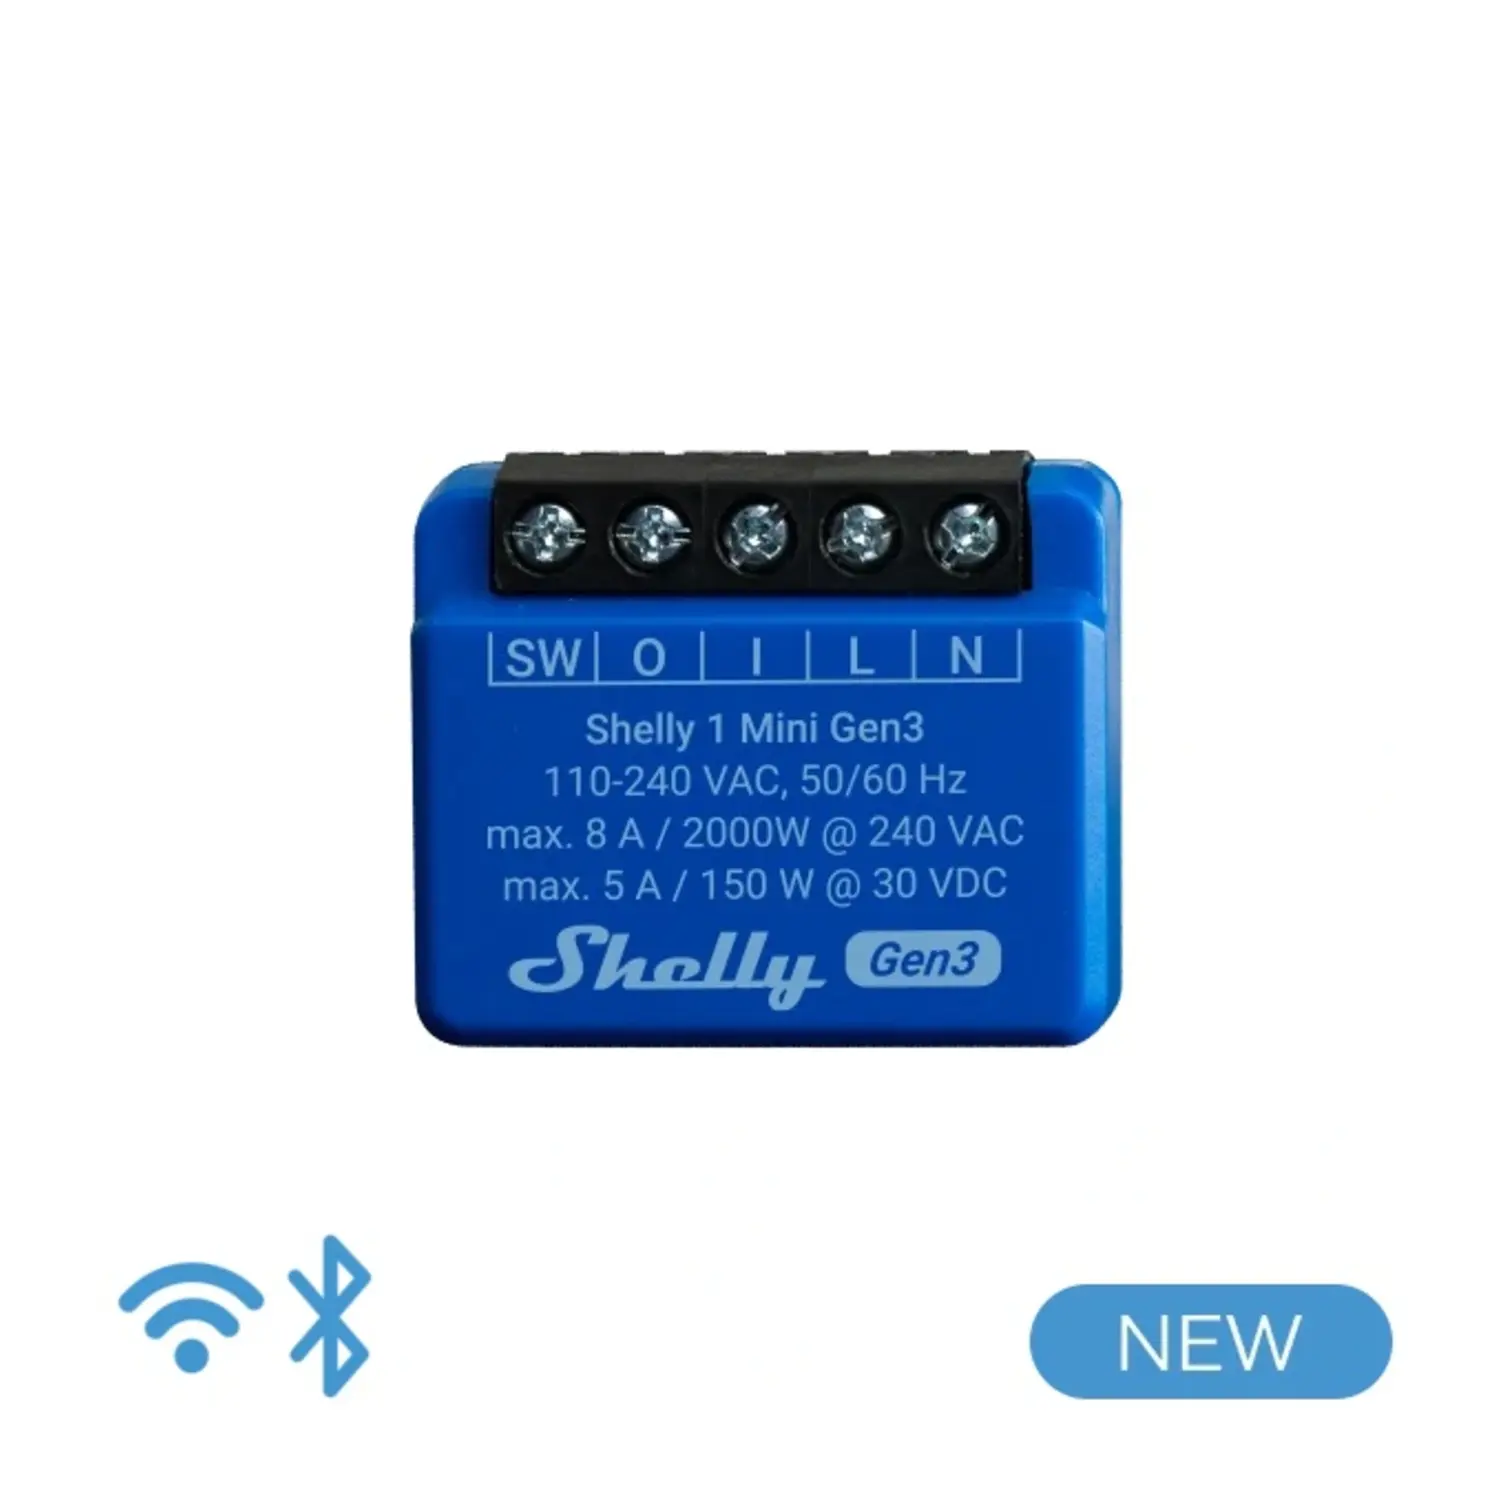 immagine del prodotto shelly 1 mini gen 3 smart relay 8A AC/DC WiFi/BT